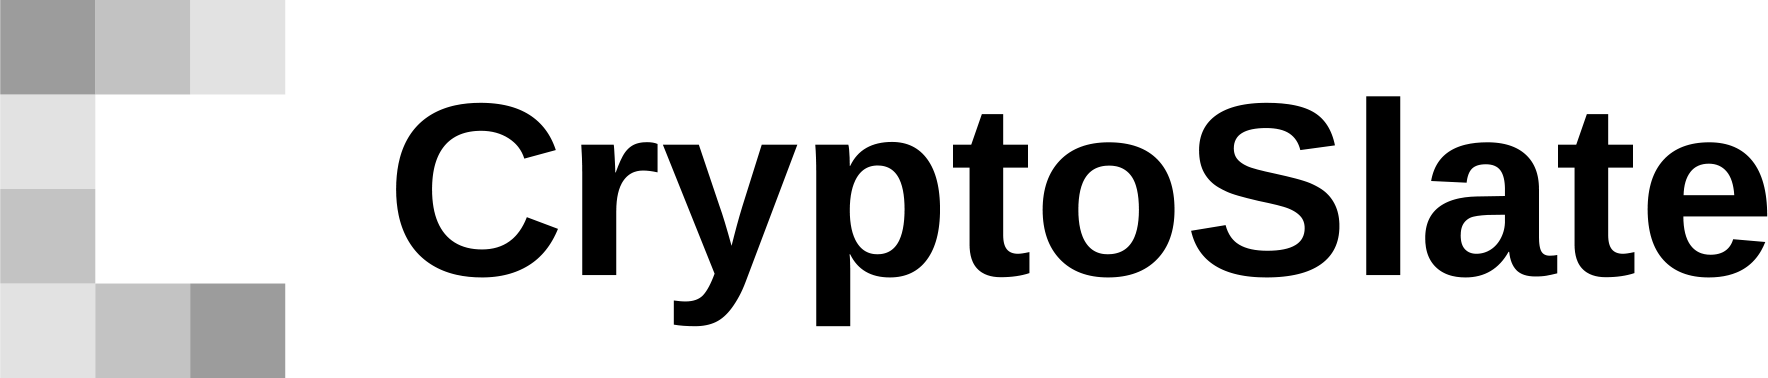 Transparent Light Logo